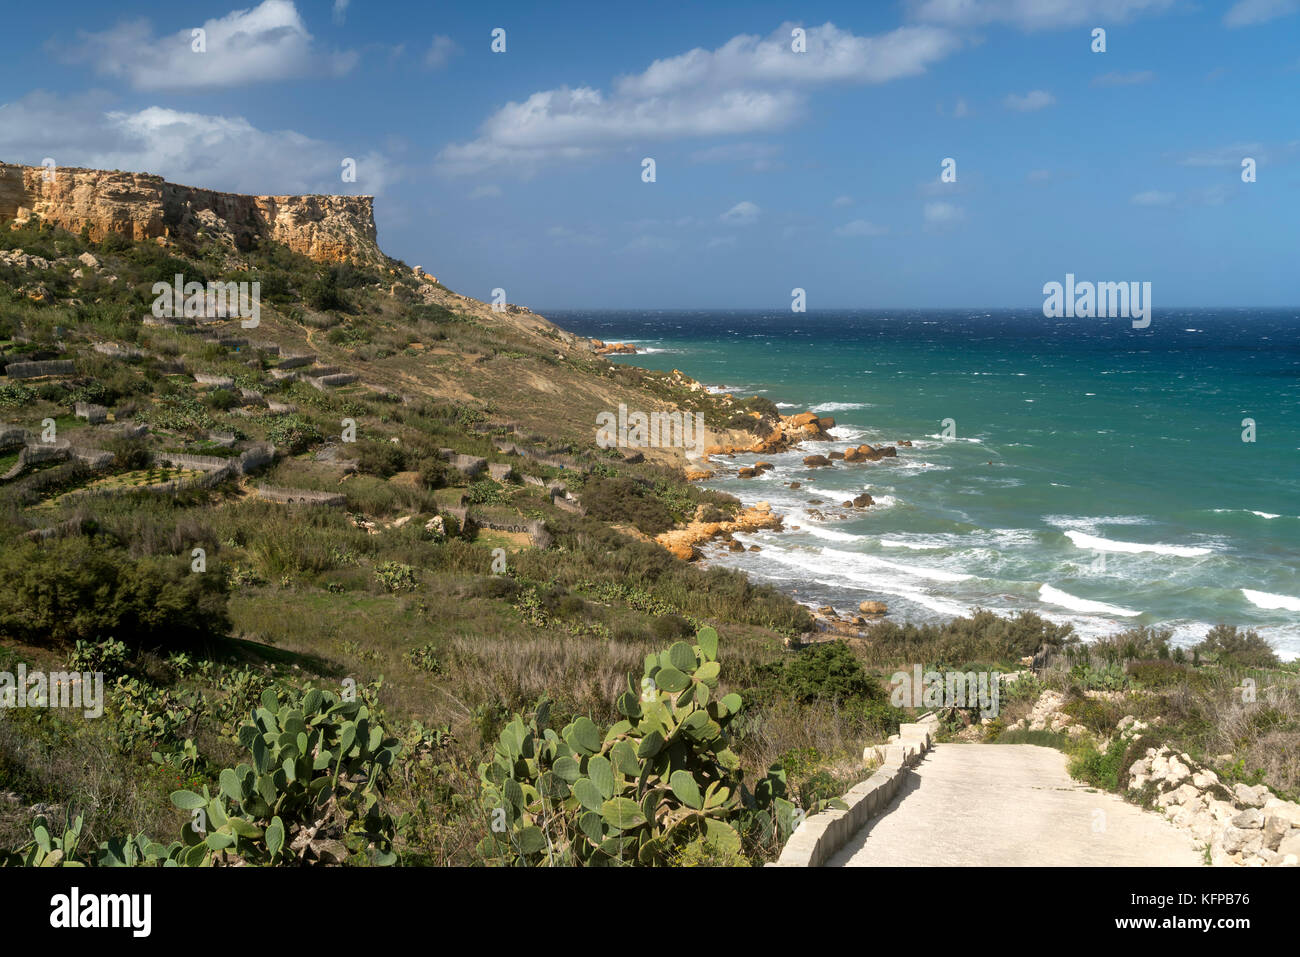 La baie de San Blas im nordosten der Insel Gozo, Malte | Rocky beach de San Blas bay, Gozo, Malte Banque D'Images